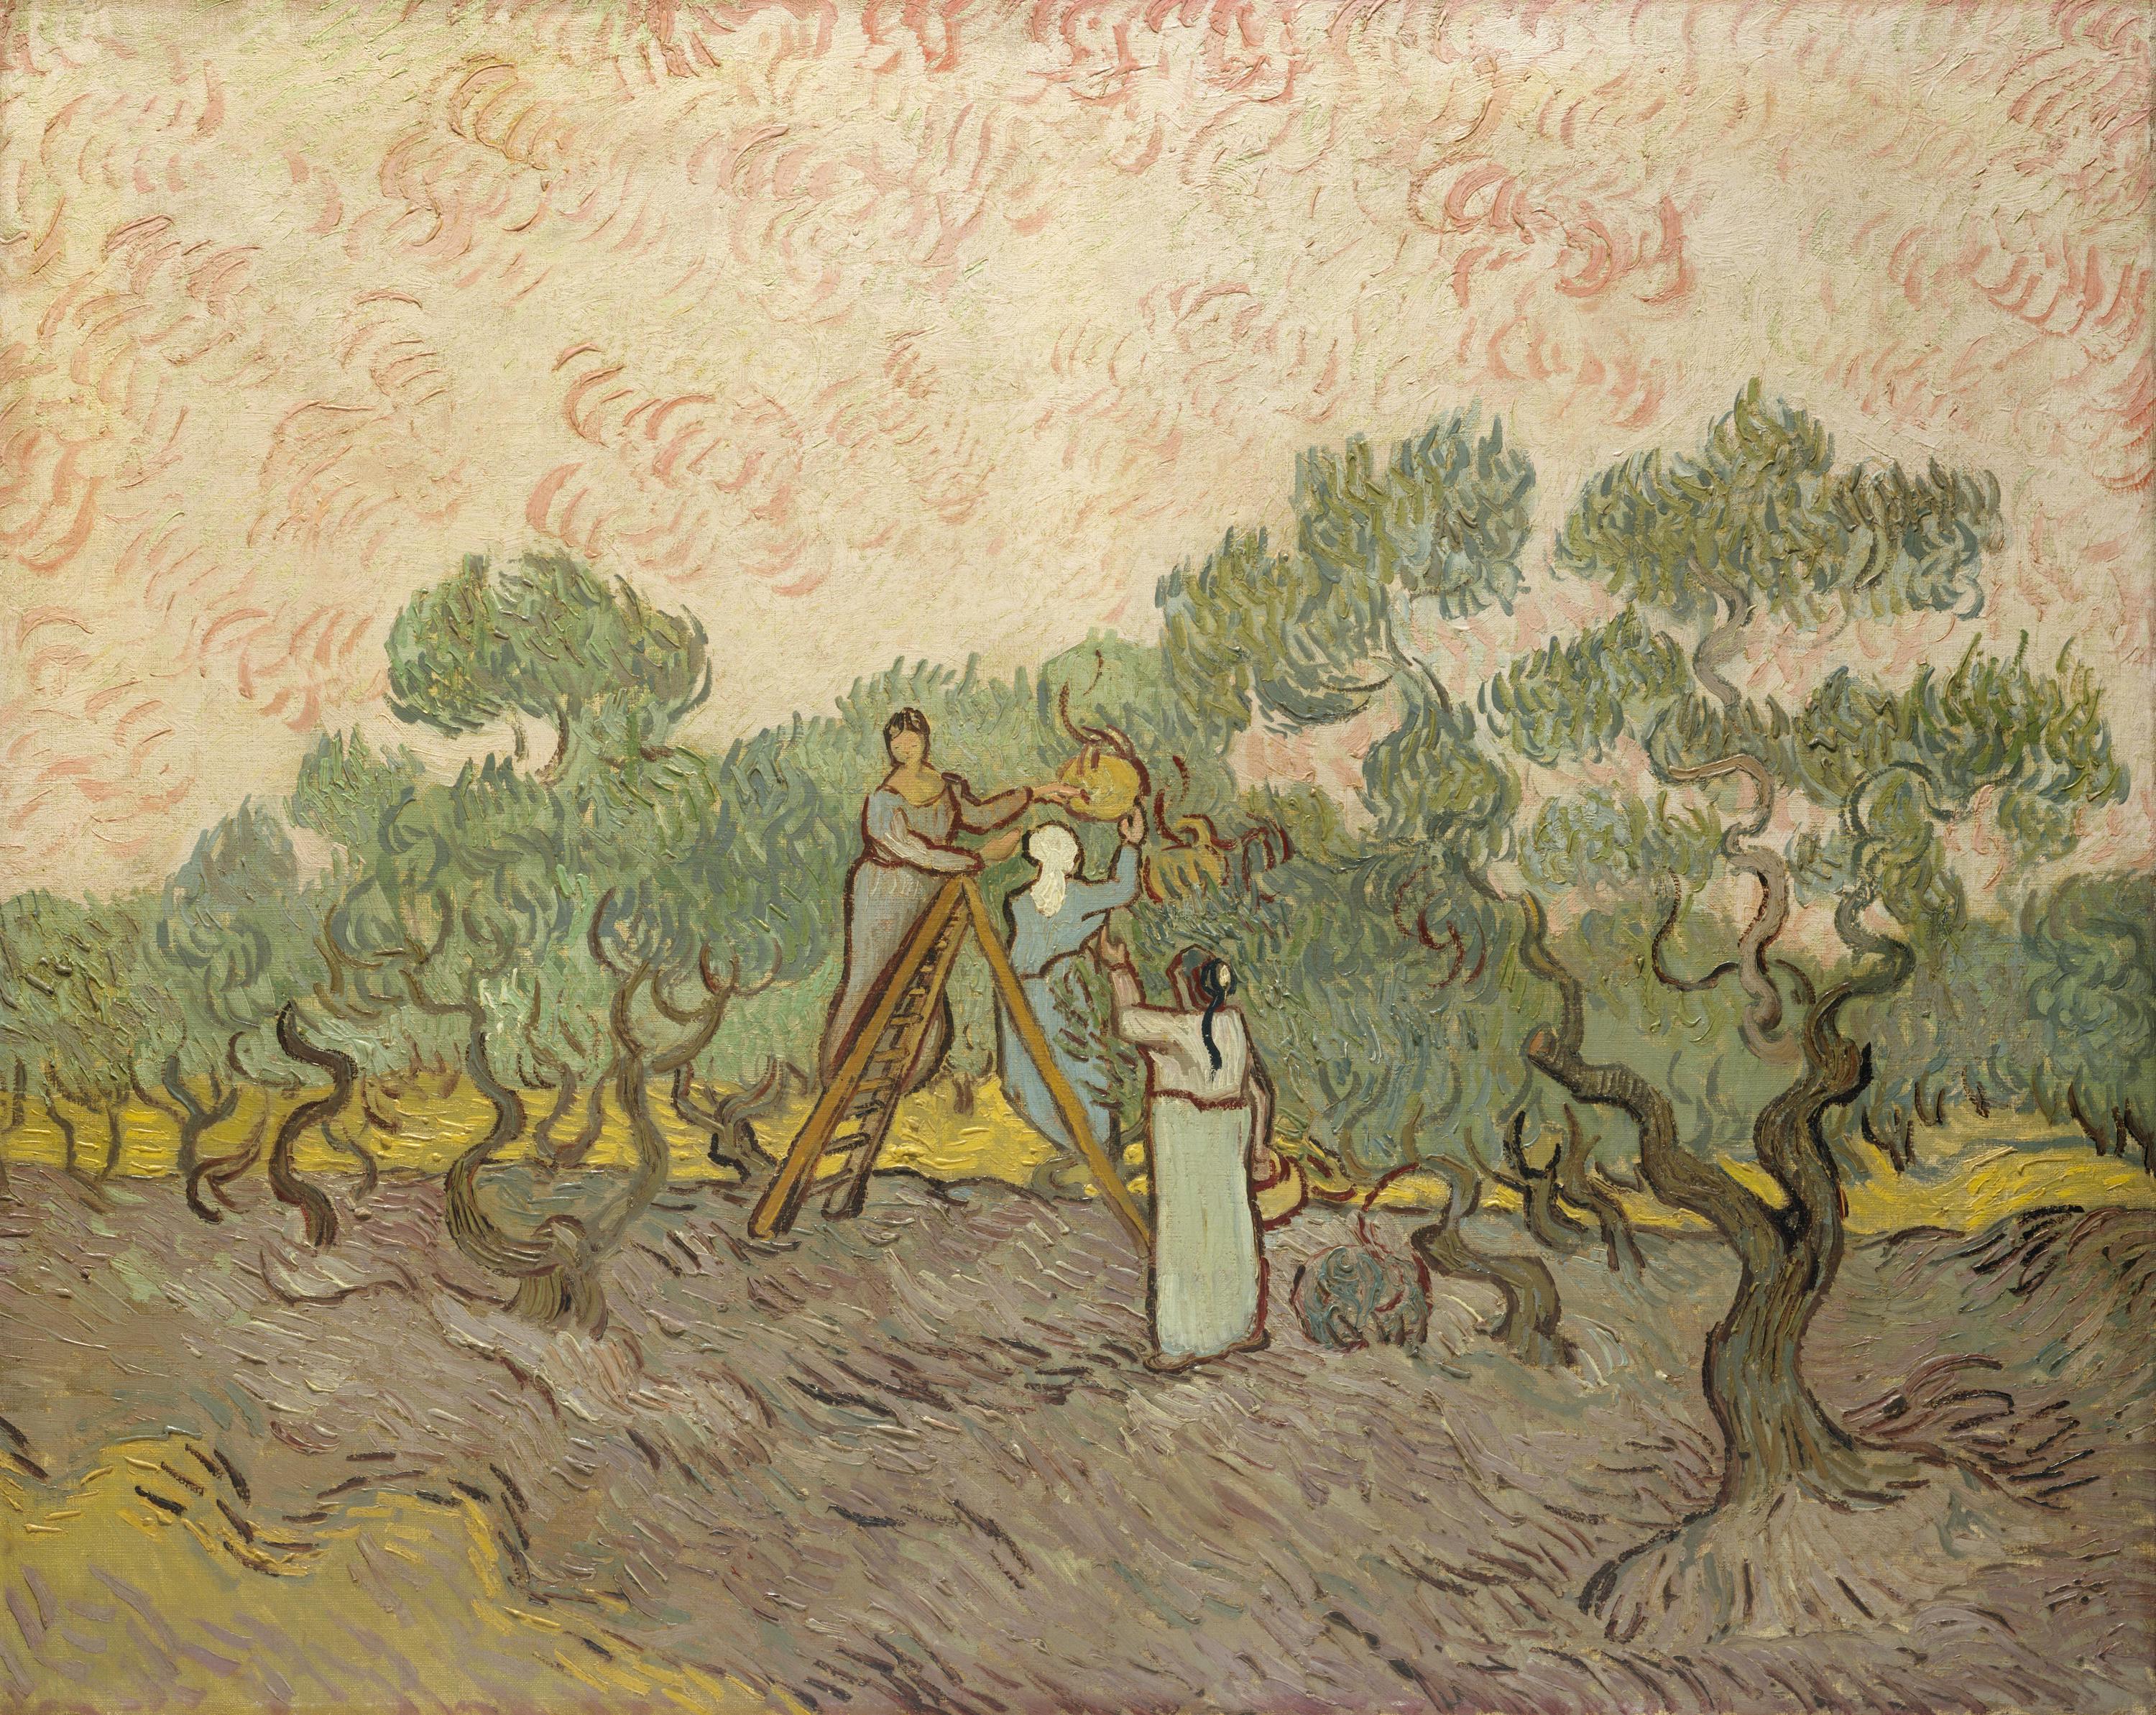 Femmes cueillant des olives  by Vincent van Gogh - 1889 - 72.7 x 91.4 cm Metropolitan Museum of Art